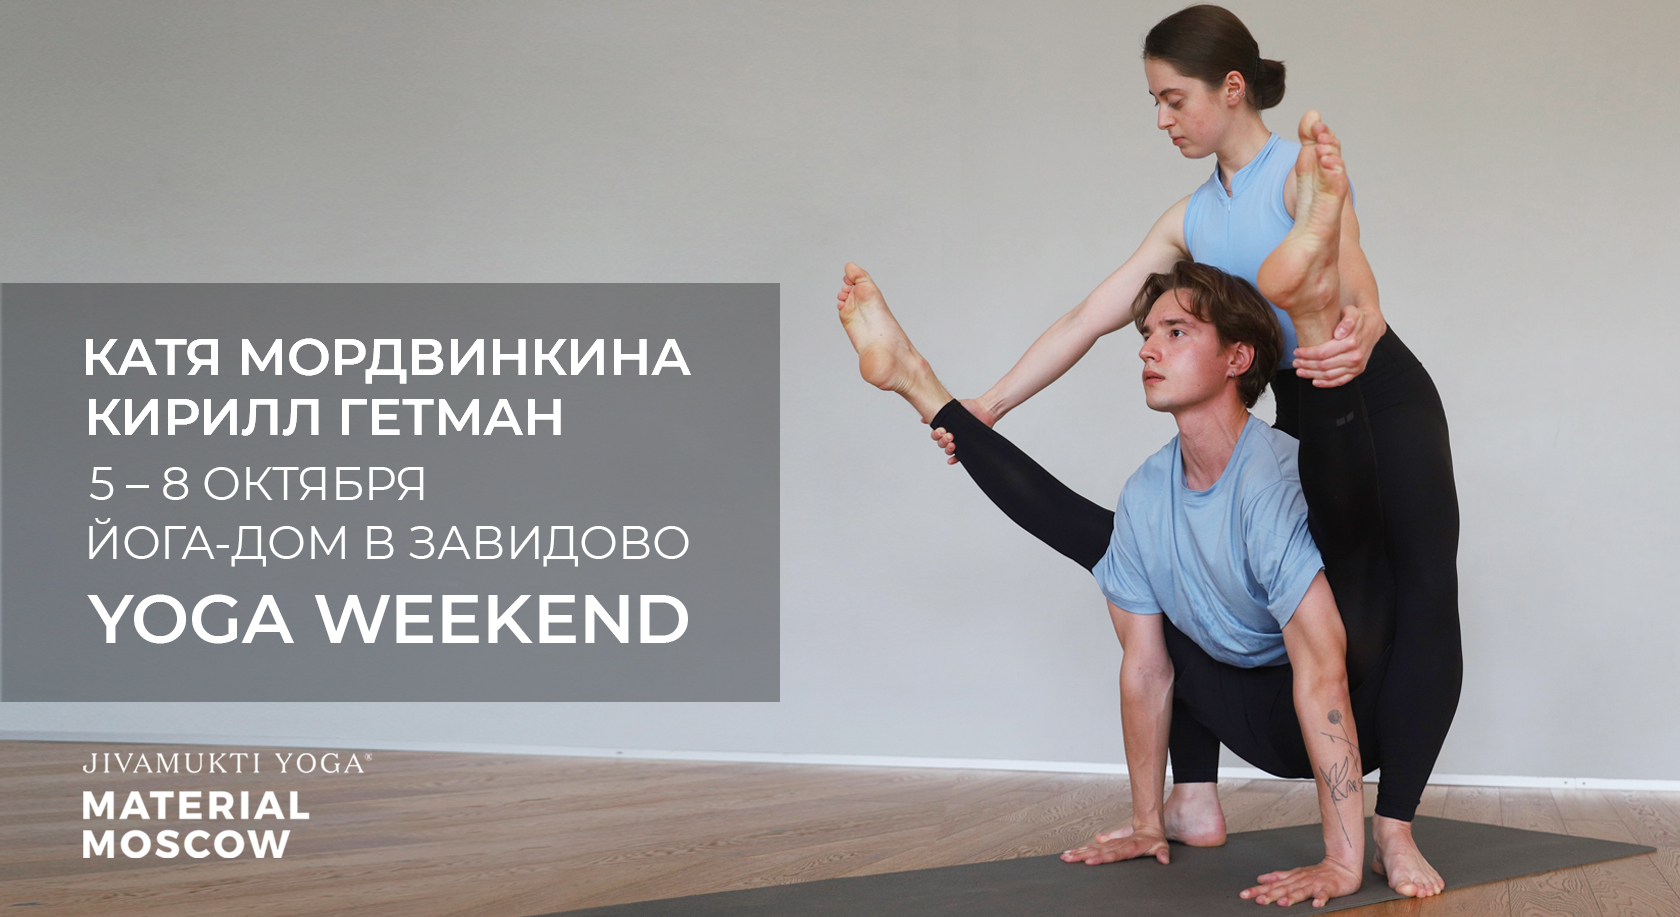 Йога дешево - недорогие занятия в йога-центрах в Москве